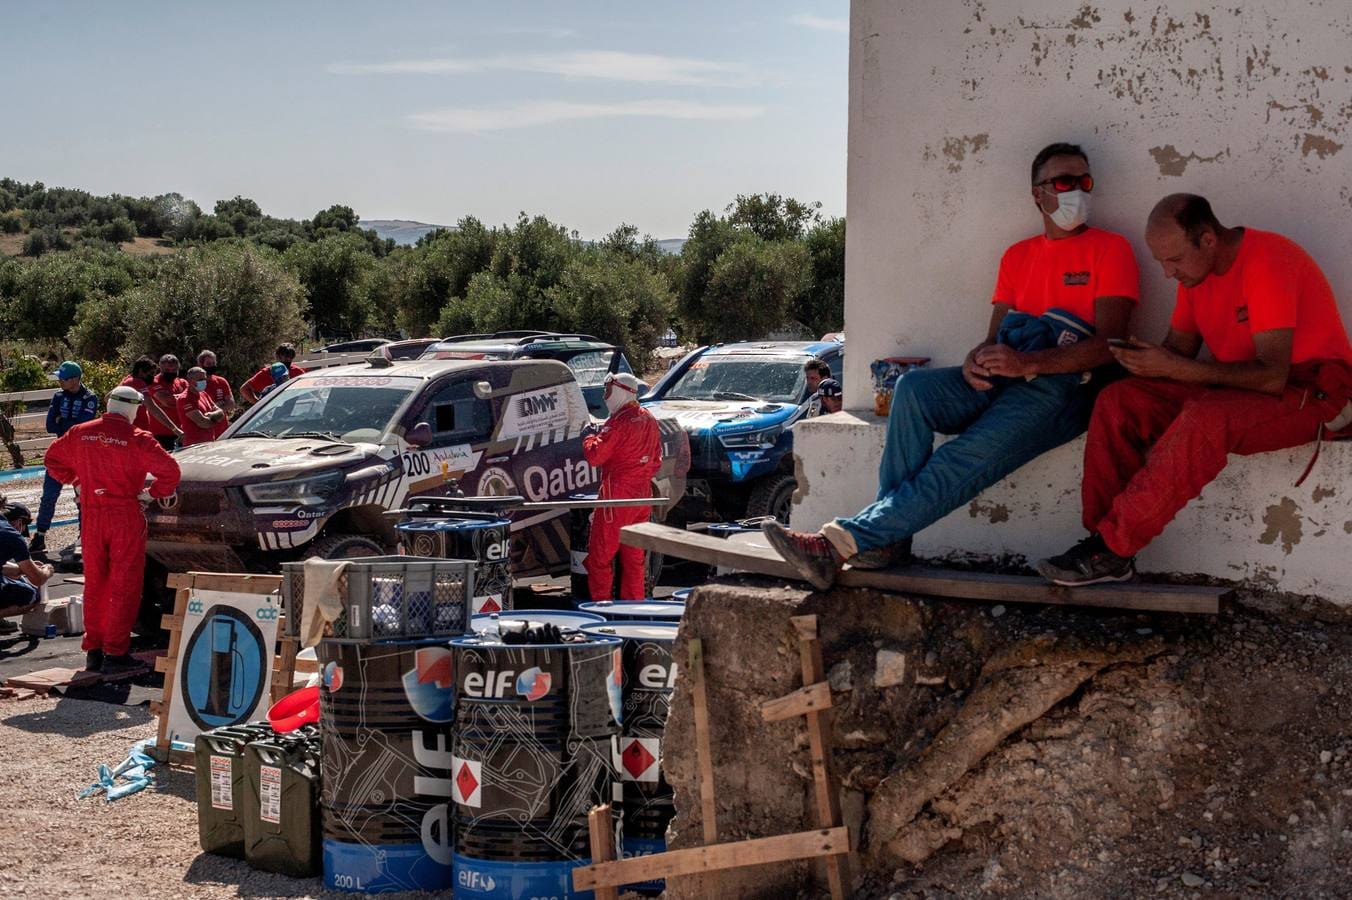 FOTOS: Las impresionantes imágenes del Rally Andalucía 2021